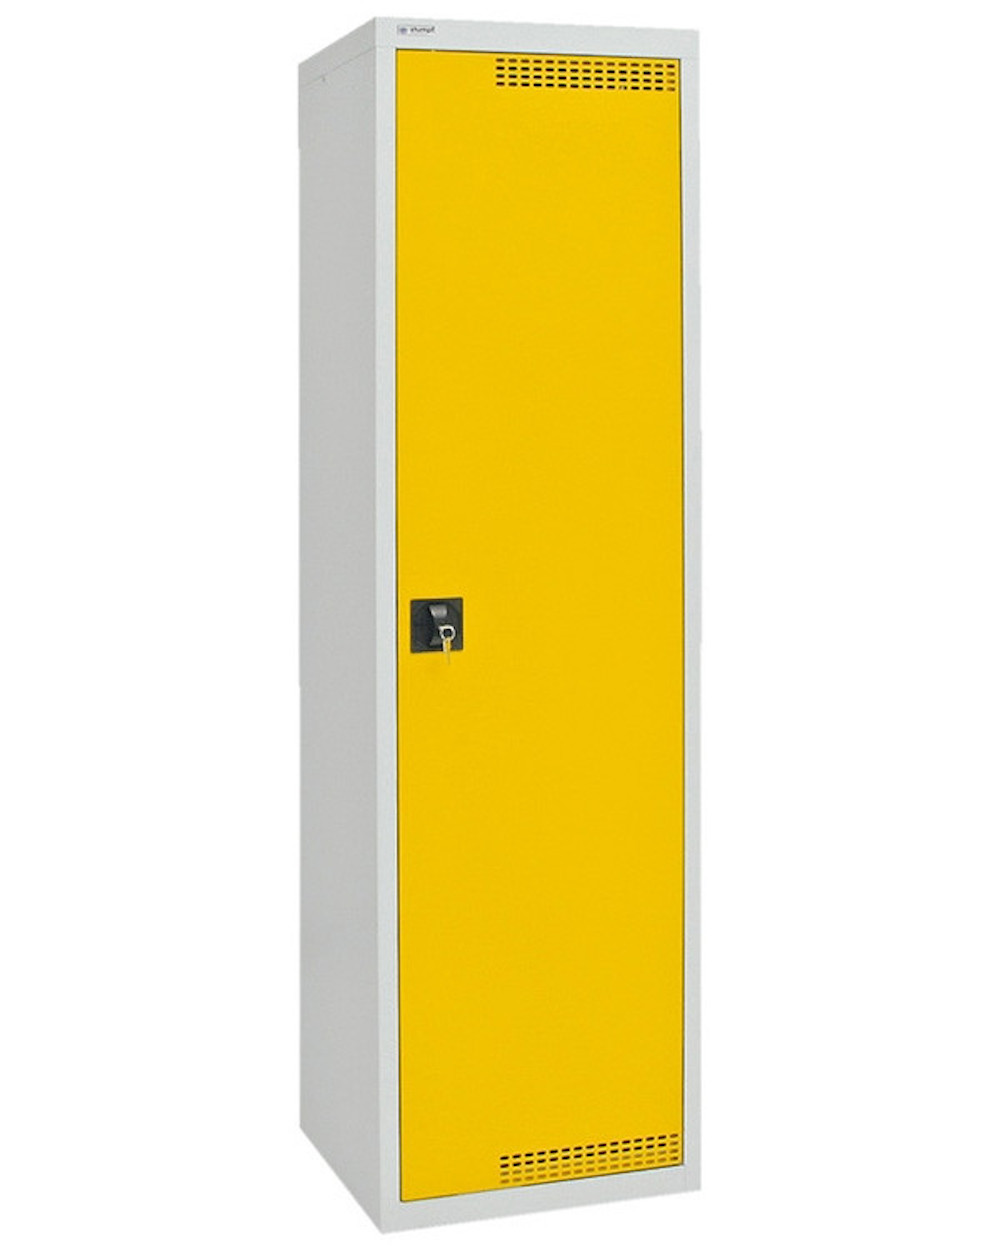 Belüfteter Umwelt & Gefahrstoffschrank mit 1 Tür | HxBxT 180x50x50cm | 4 Auffangwannen mit je 10 Liter | Lichtgrau/Signalgelb